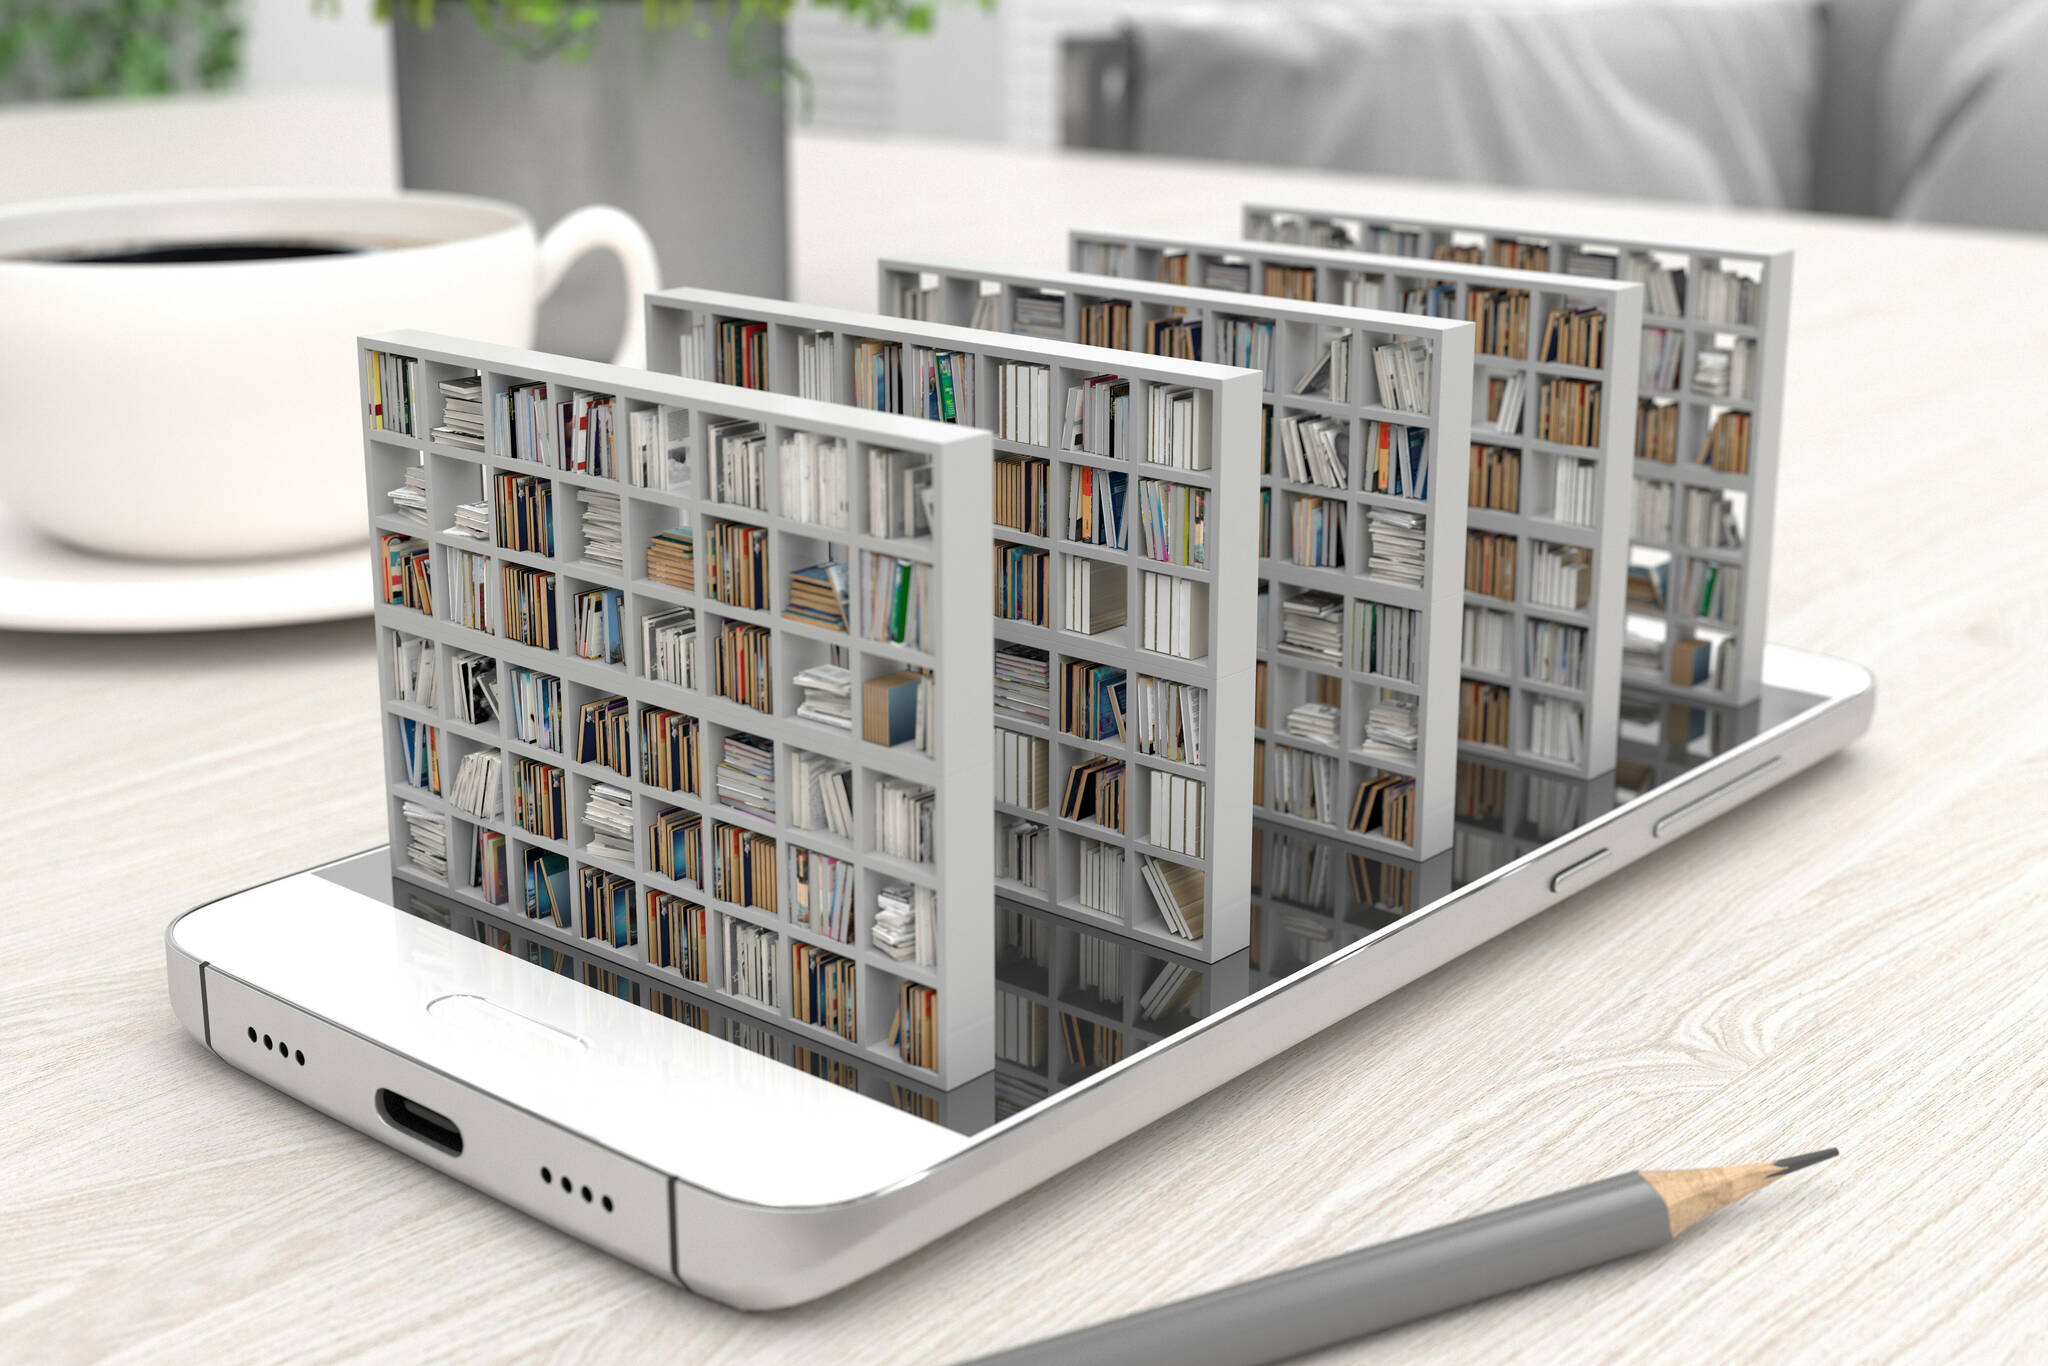 Smartphone liegt auf einem Tisch, aus dem Displa ragen fünf Bücherregale heraus